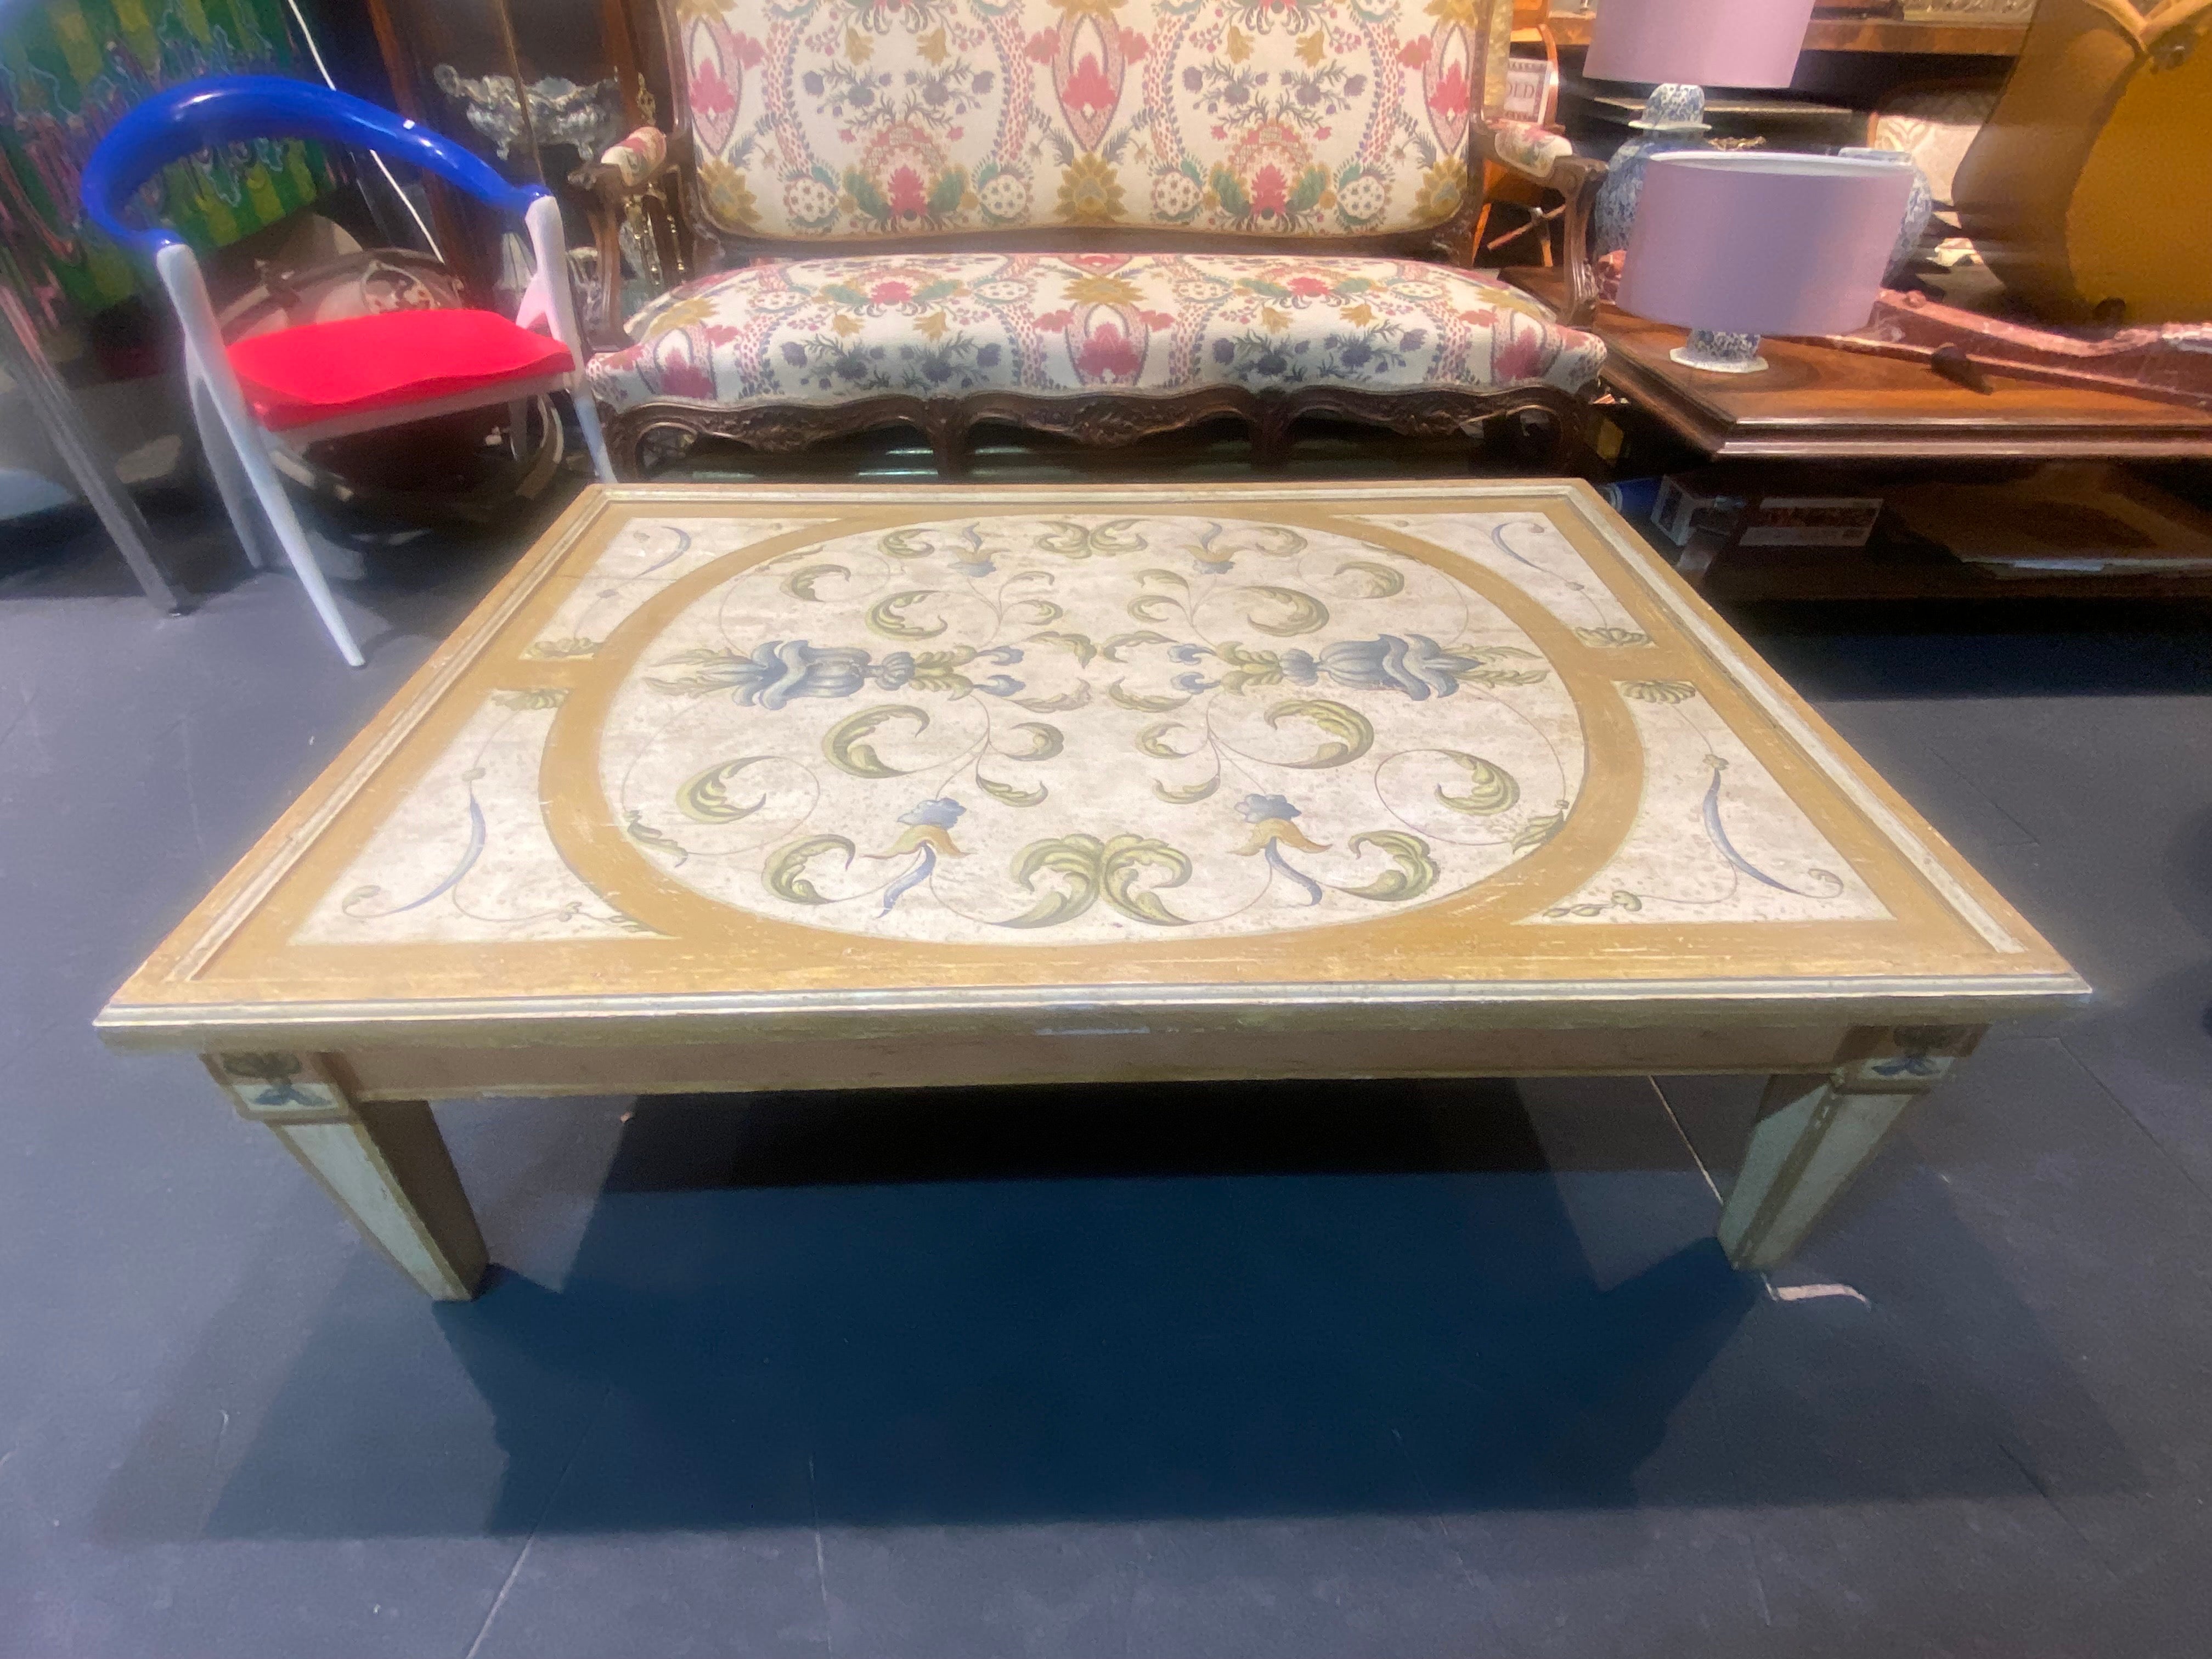 Extraordinaire grande table de canapé peinte à la main, fabriquée au début du 19e siècle en Italie.
Il y a une petite fissure sur le plateau mais c'est une autre preuve d'authenticité comme le dessous du plateau aussi, ce qui montre l'aération de